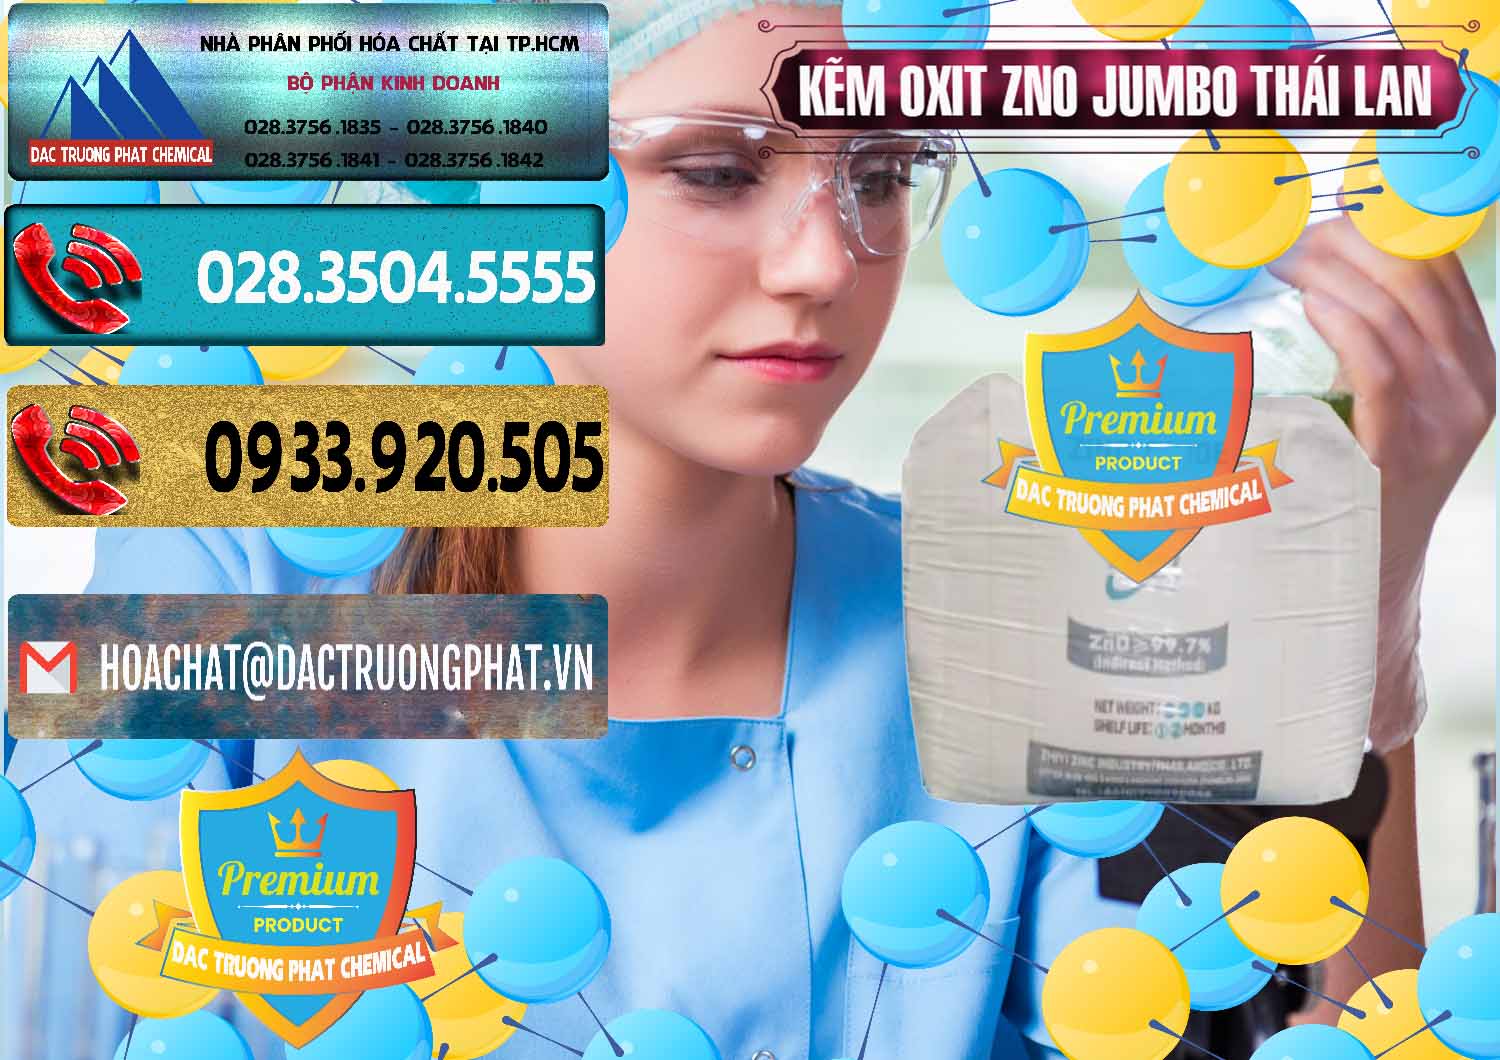 Chuyên bán - phân phối Zinc Oxide - Bột Kẽm Oxit ZNO Jumbo Bành Thái Lan Thailand - 0370 - Cty phân phối & bán hóa chất tại TP.HCM - hoachatdetnhuom.com